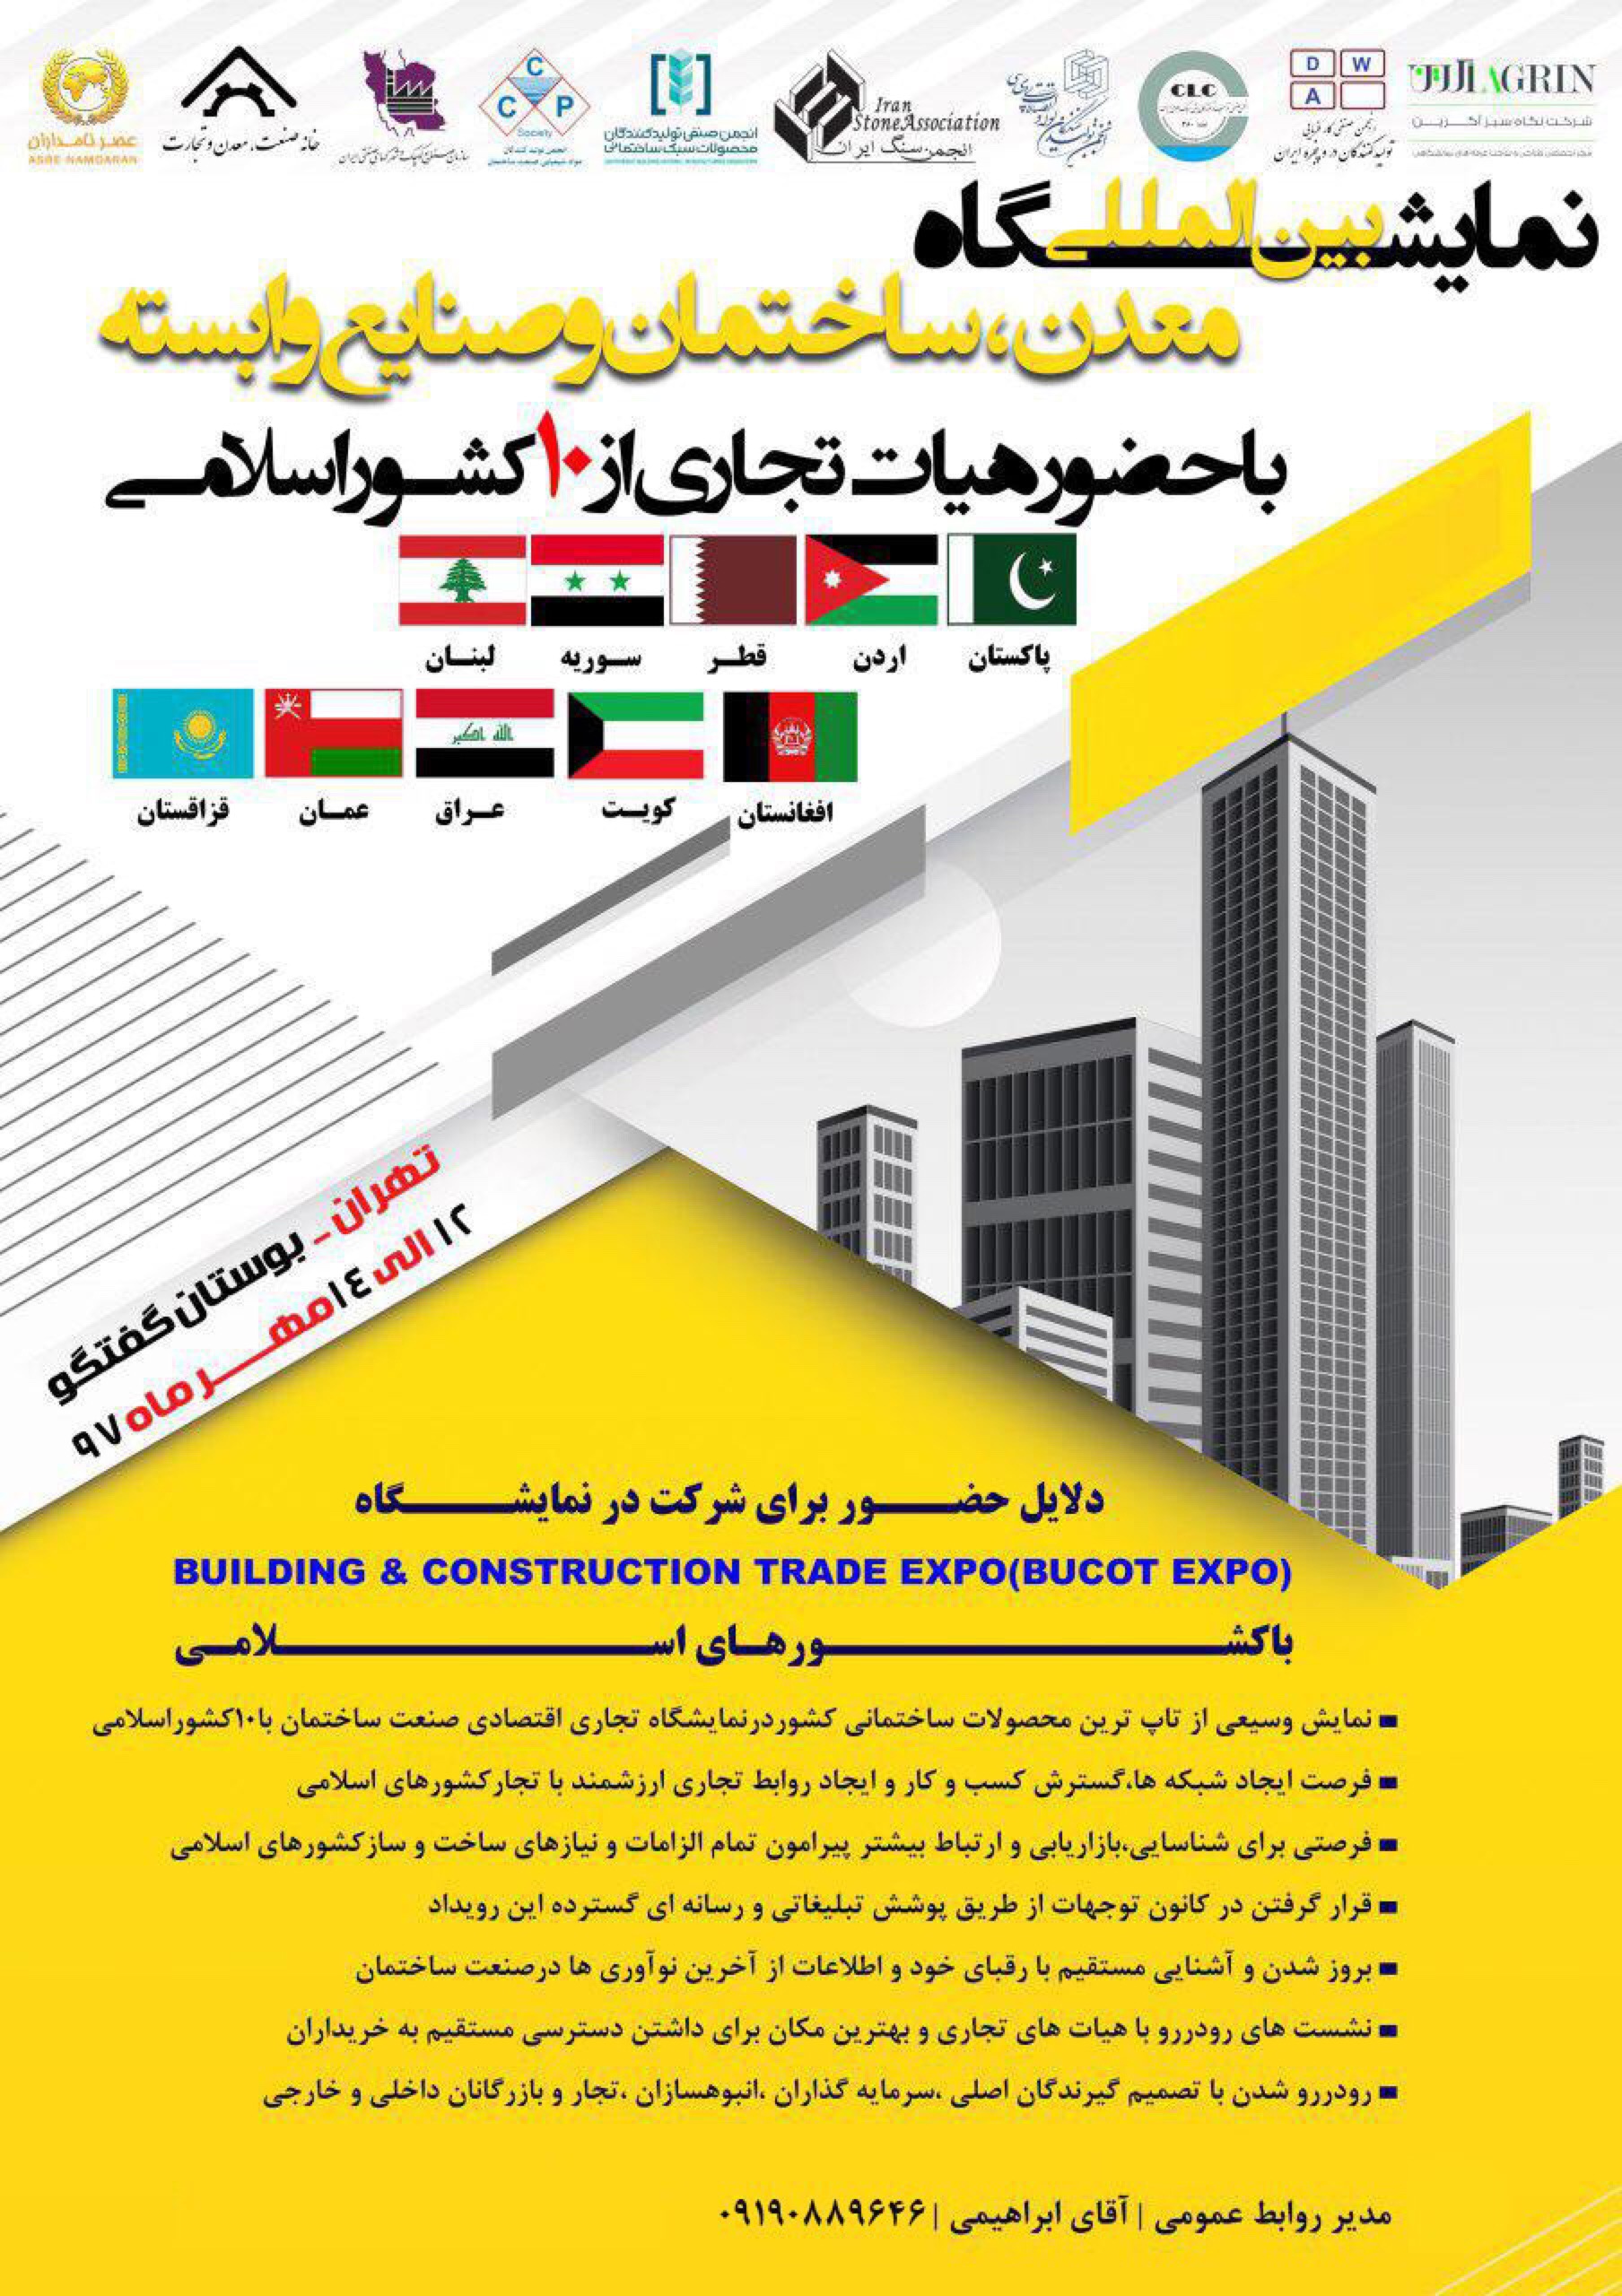 نمایشگاه بین المللی معدن، ساختمان و صنایع وابسته با حضور هیات تجاری از ۱۰ کشور اسلامی